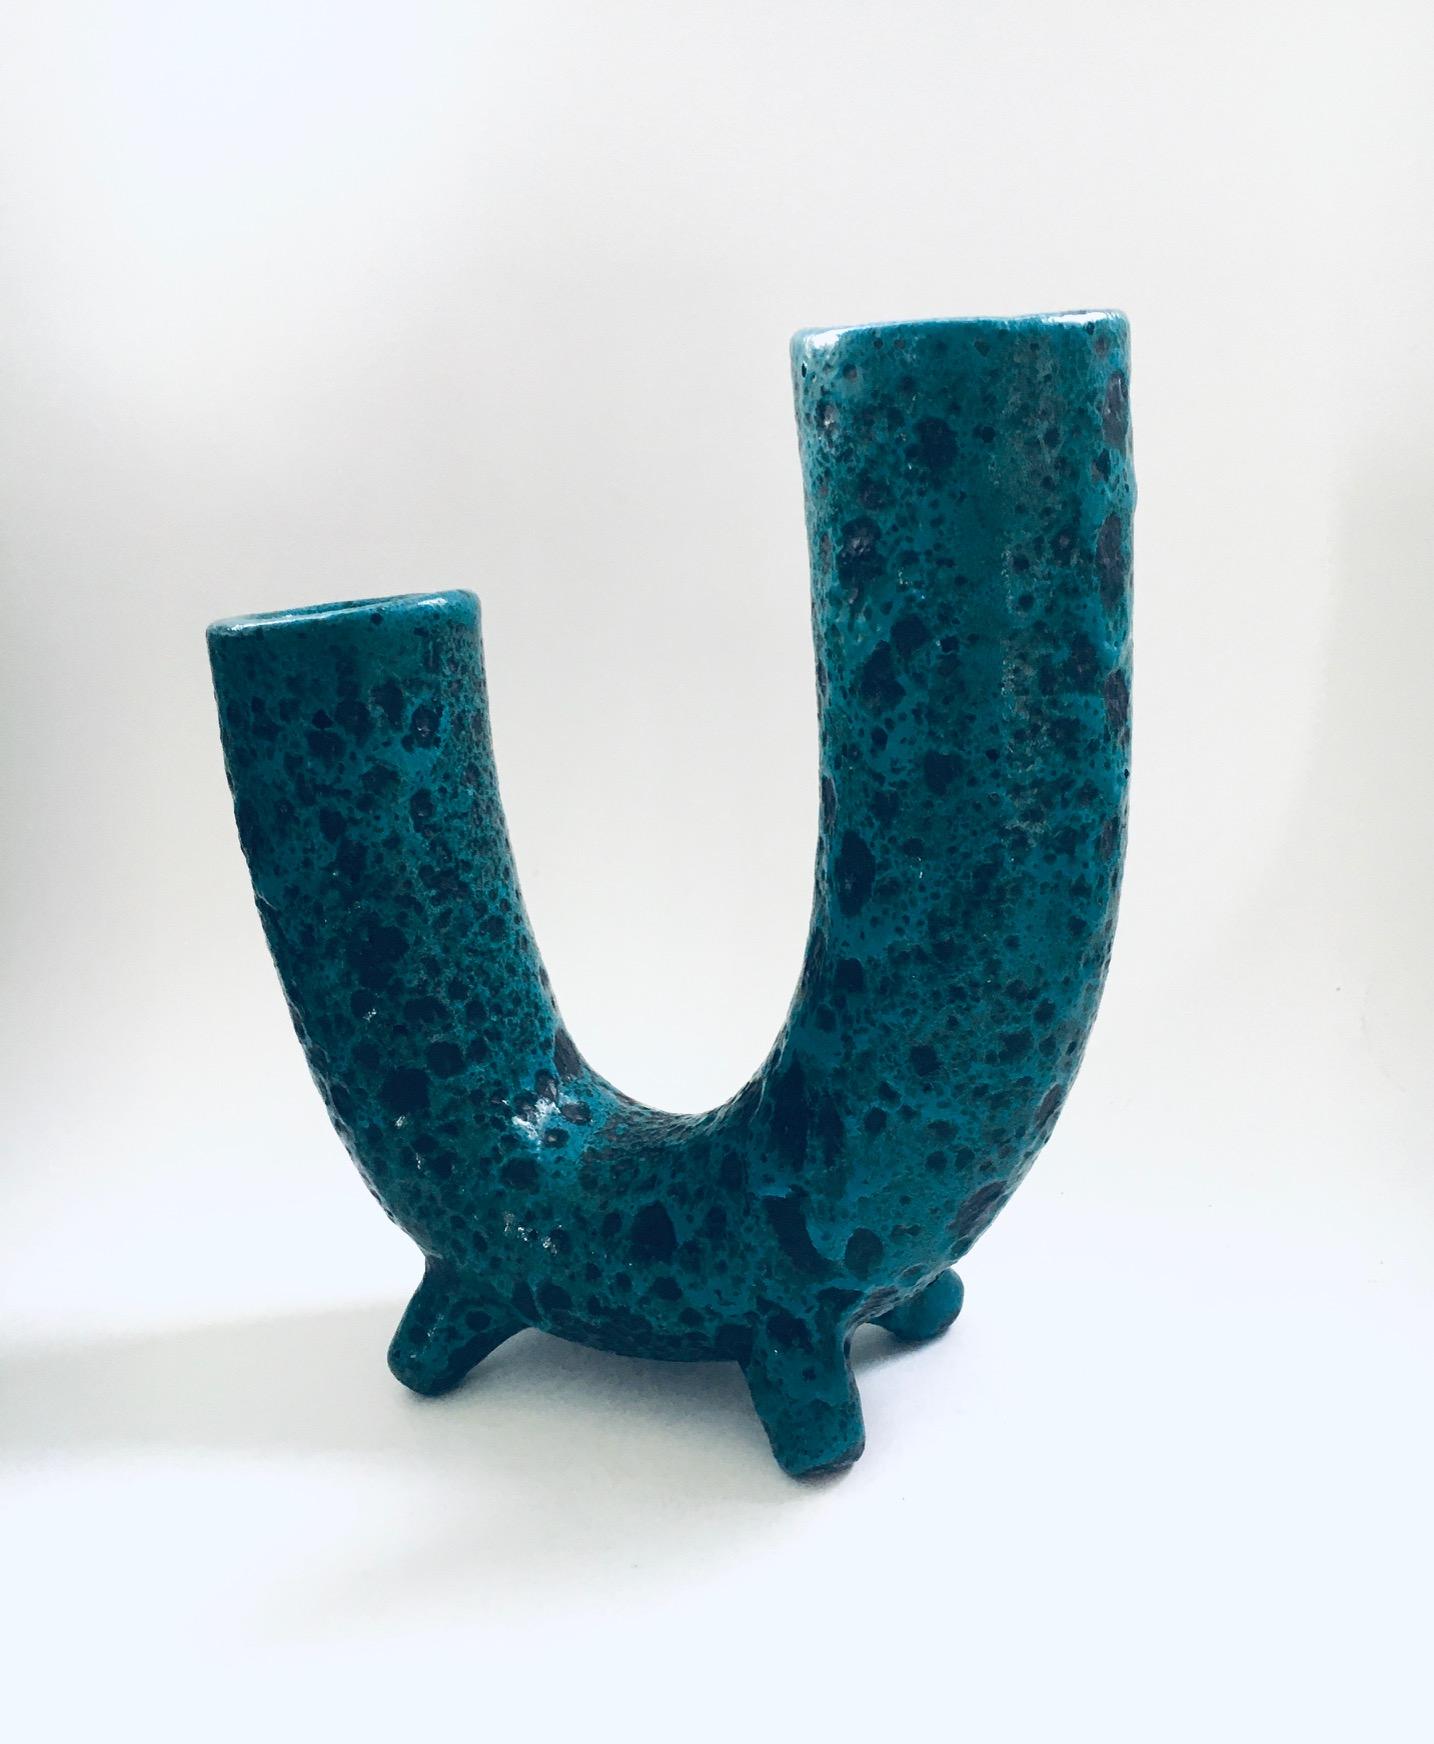 Mid-20th Century Brutalist Art Pottery Studio Fat Lava Horn Spout Vase, Belgium 1960's For Sale